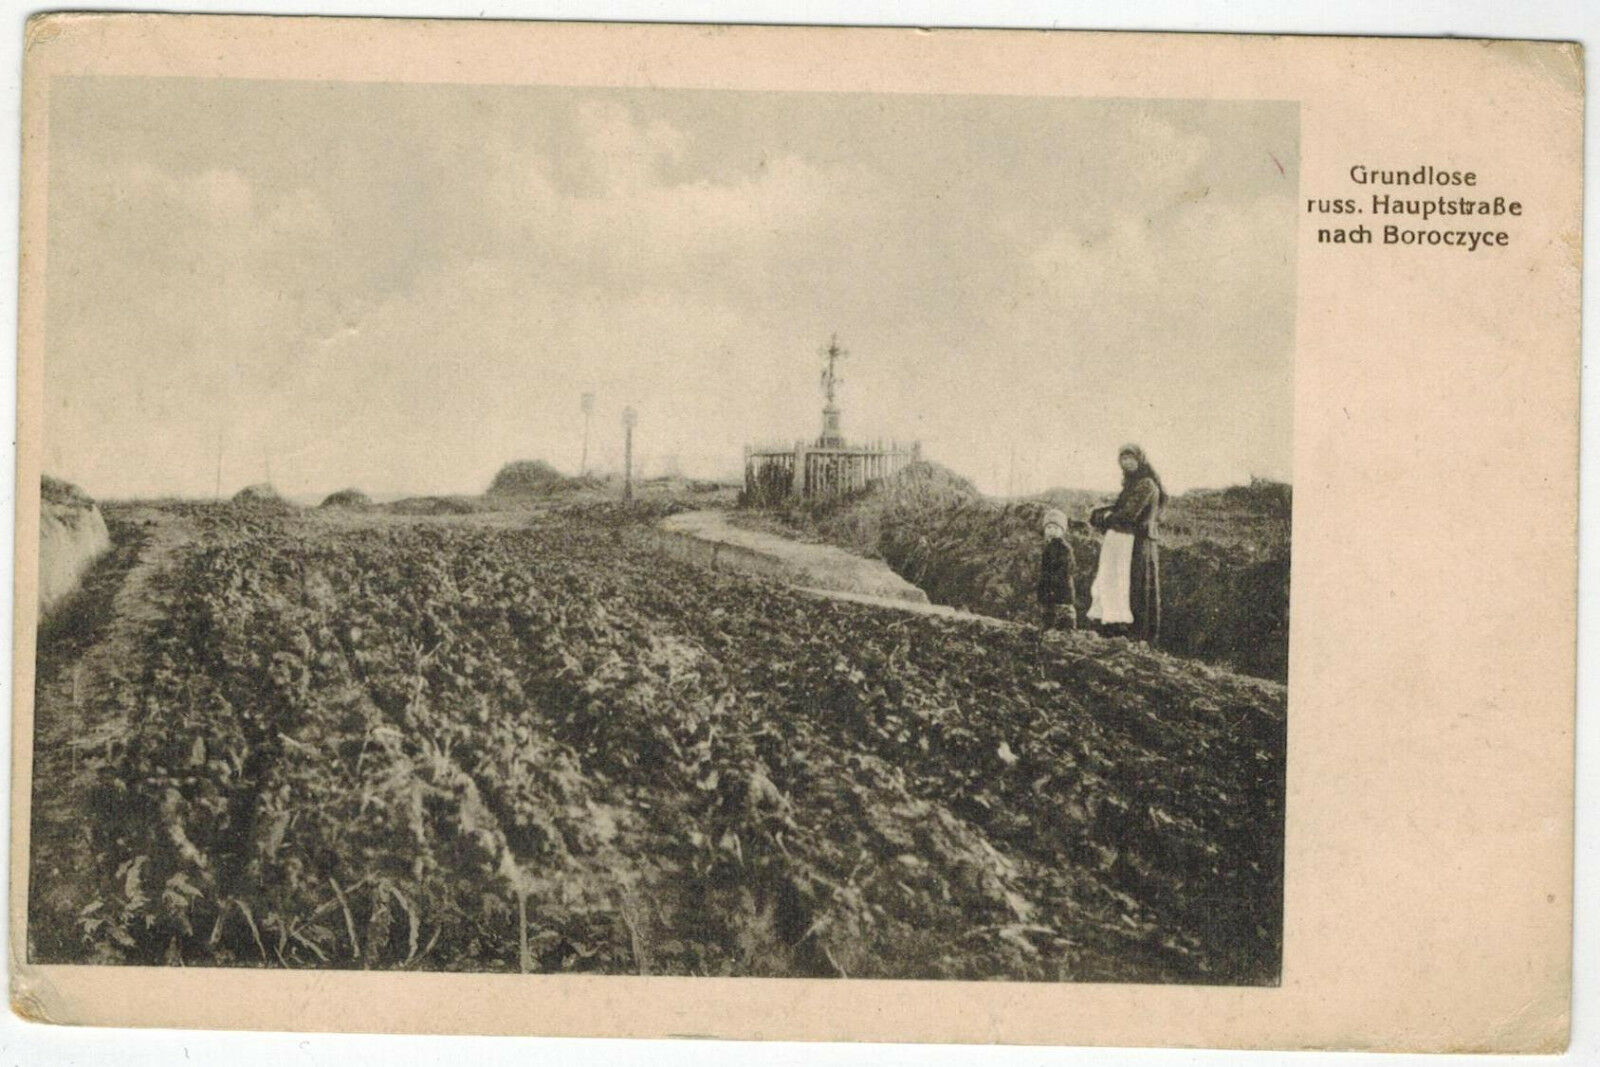 Hard Road to Boroczyce, West Ukraine, 1917, via German Fieldpost to Germany